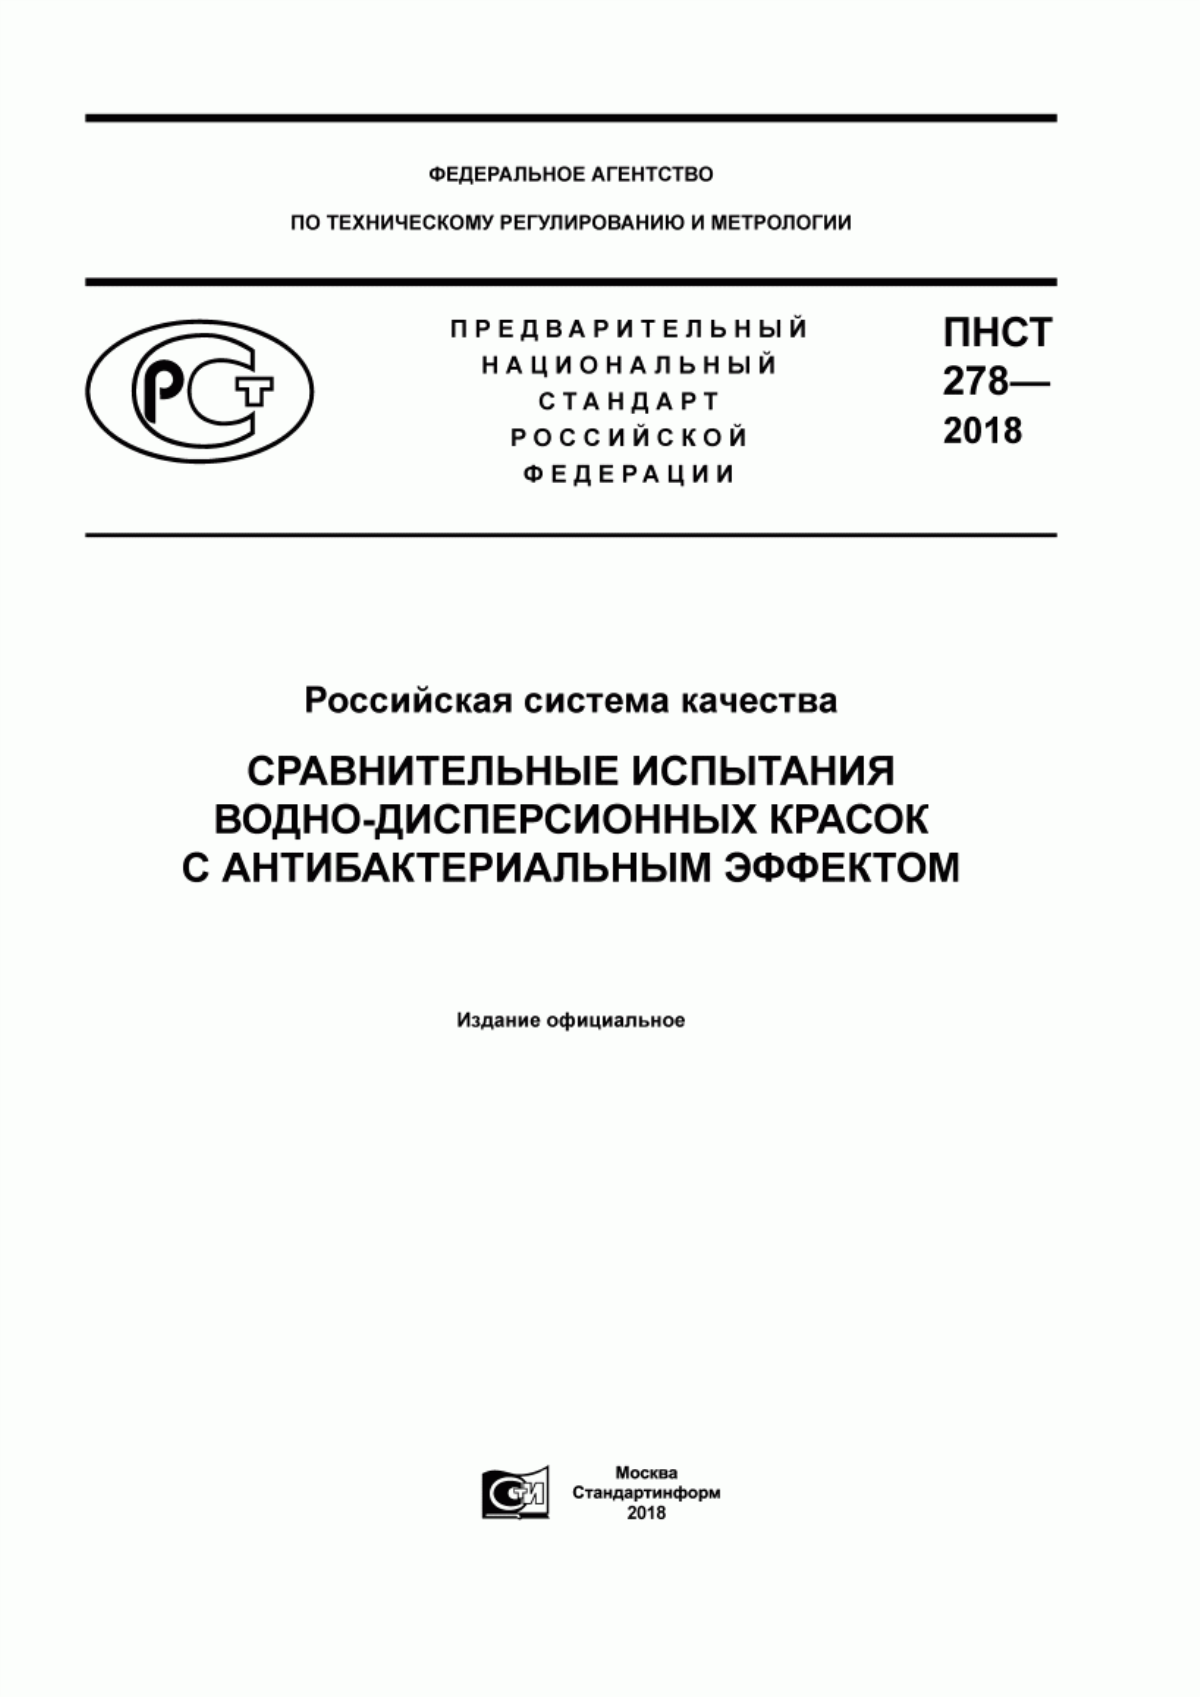 ПНСТ 278-2018 Российская система качества. Сравнительные испытания водно-дисперсионных красок с антибактериальным эффектом